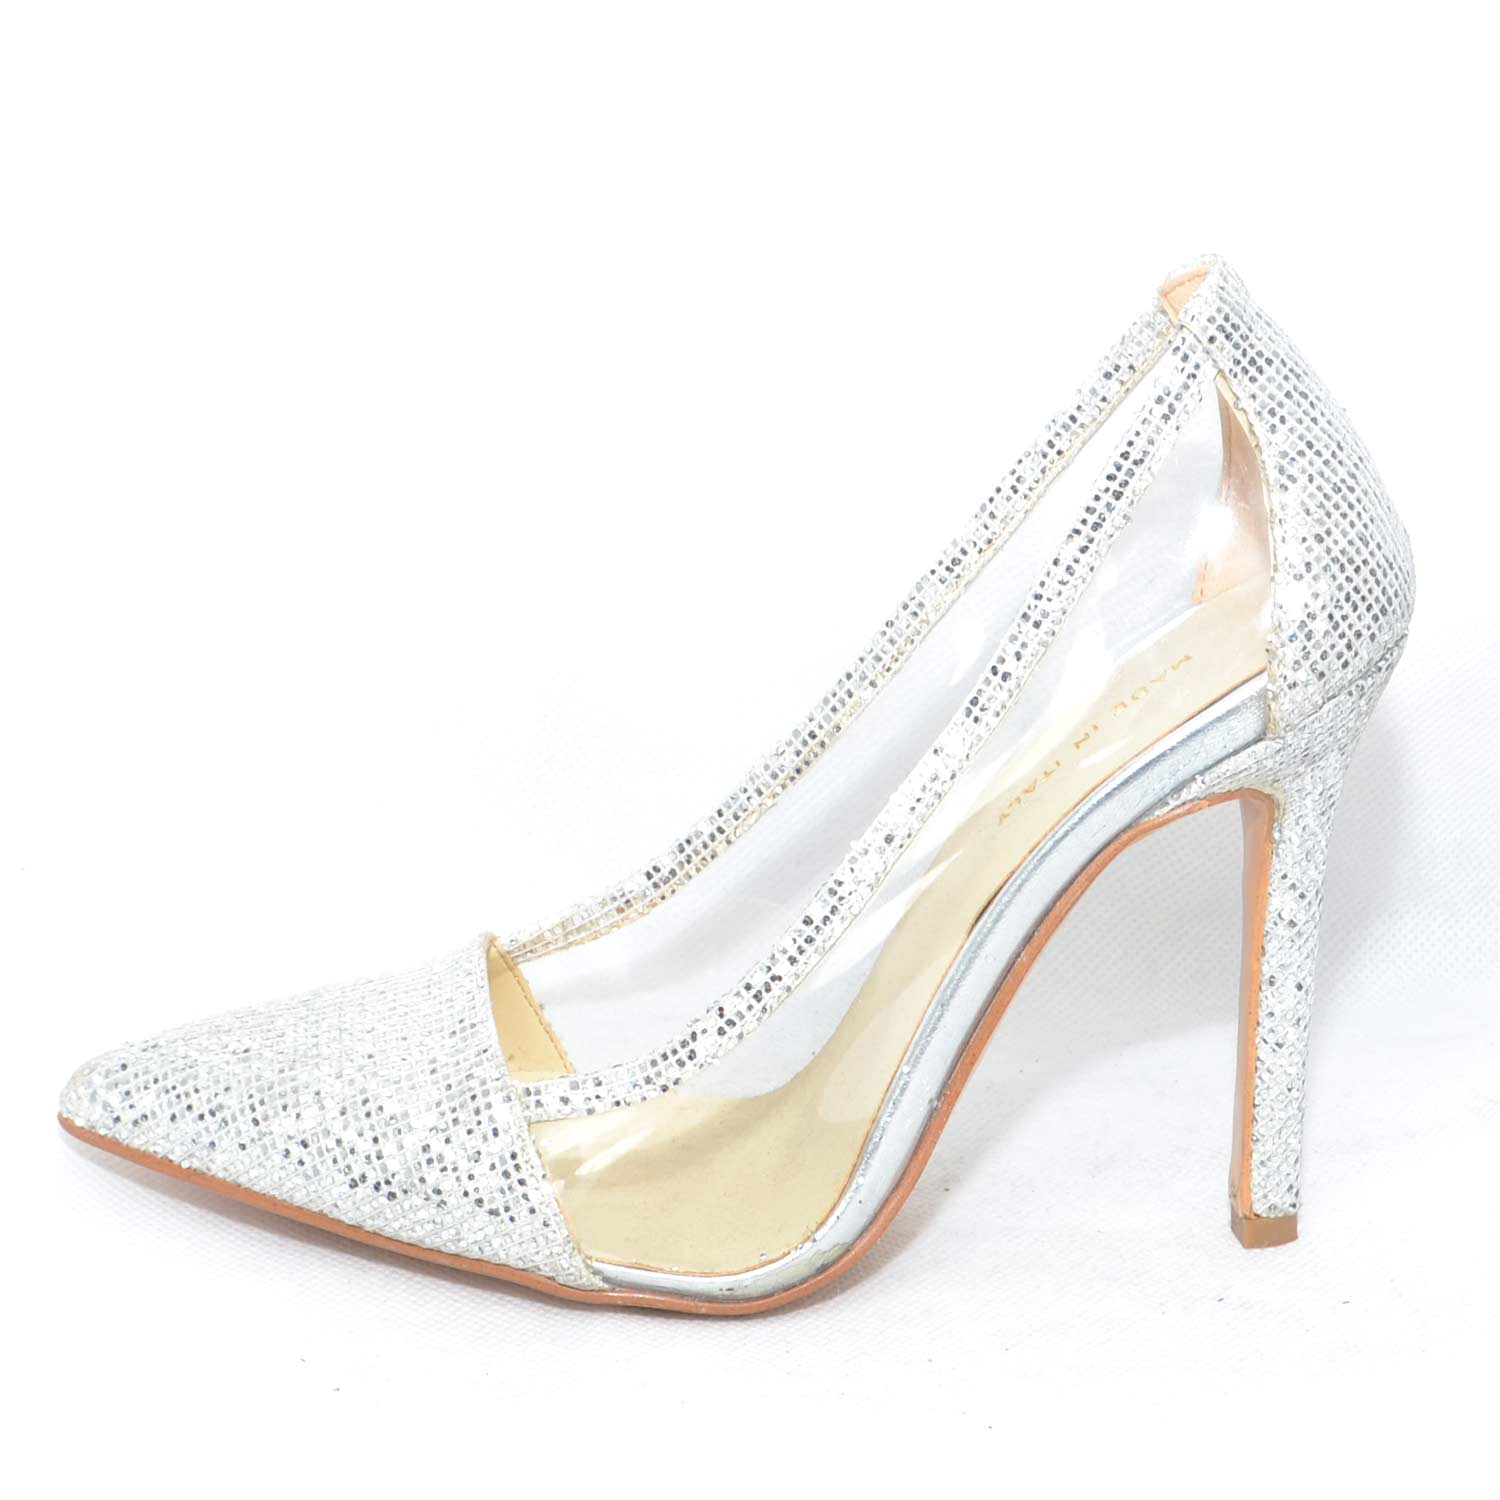 scarpe donna eleganti in glitter argento con trasparenza glamour laterale  handma | eBay